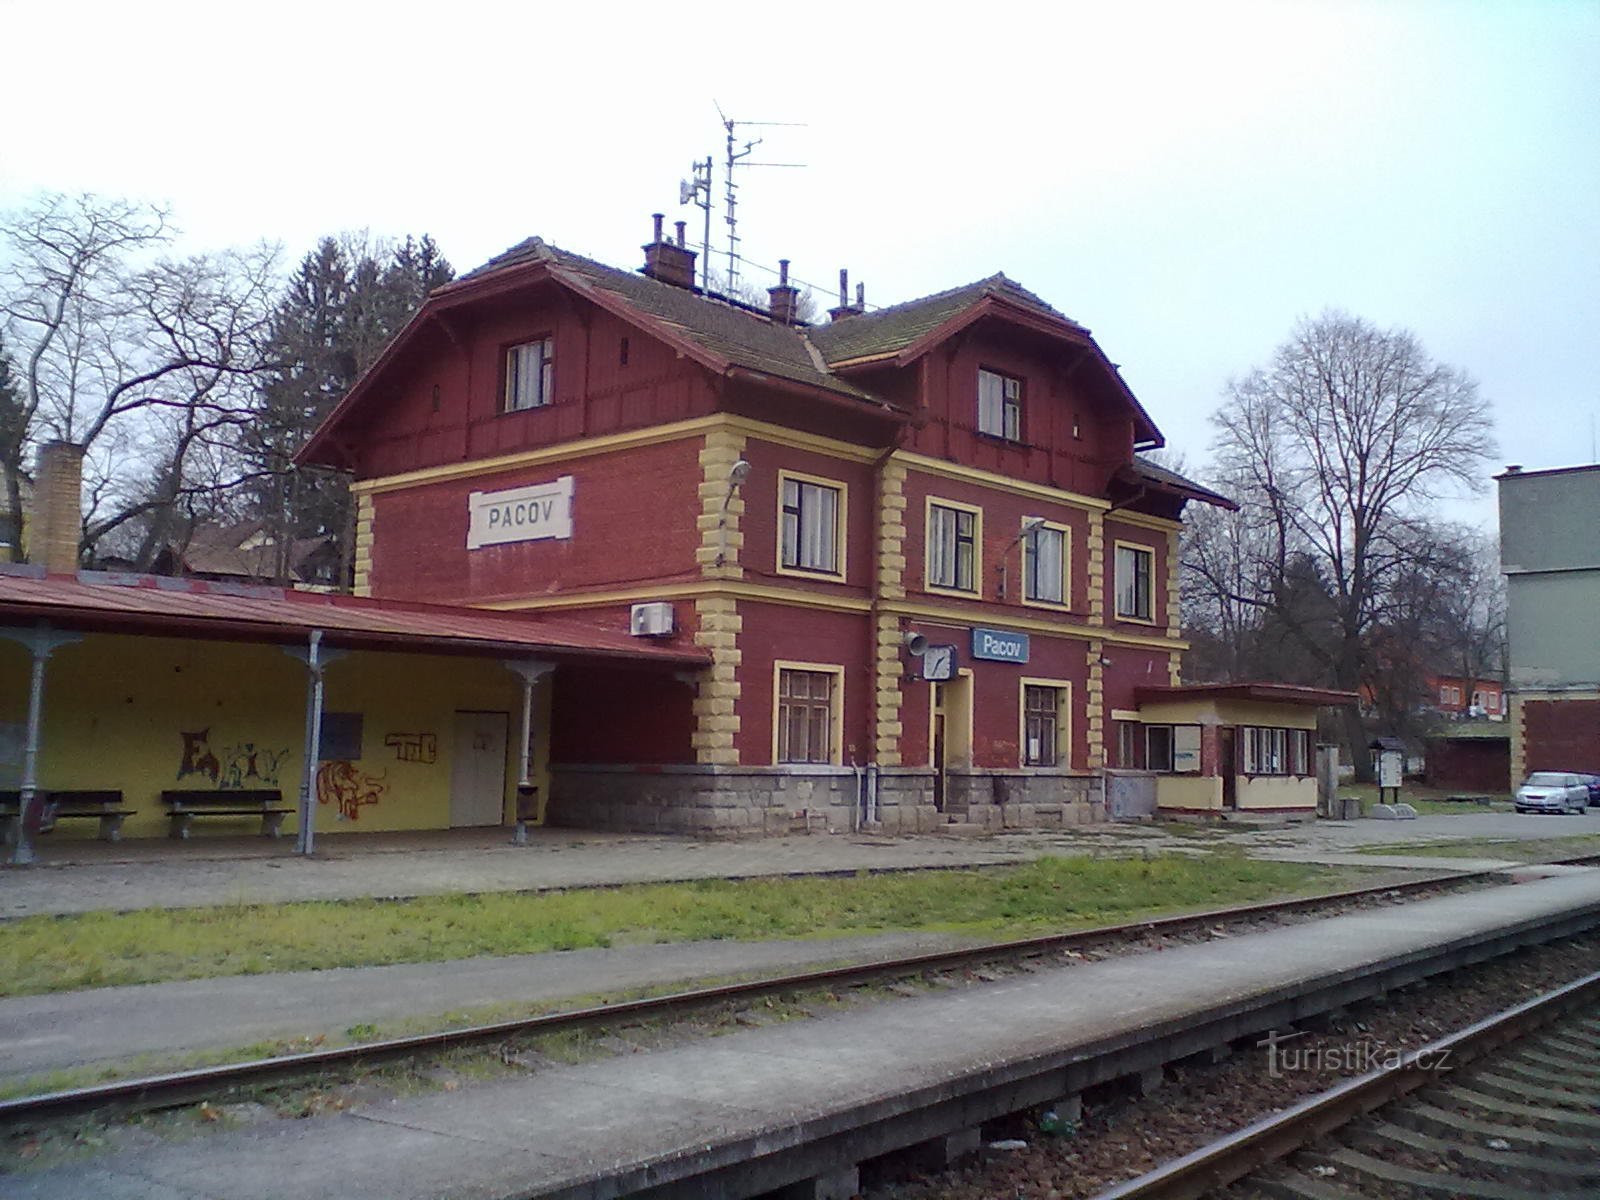 1. σιδηροδρομικός σταθμός στο Pacov - σημείο εκκίνησης και λήξης του προσκυνήματος.